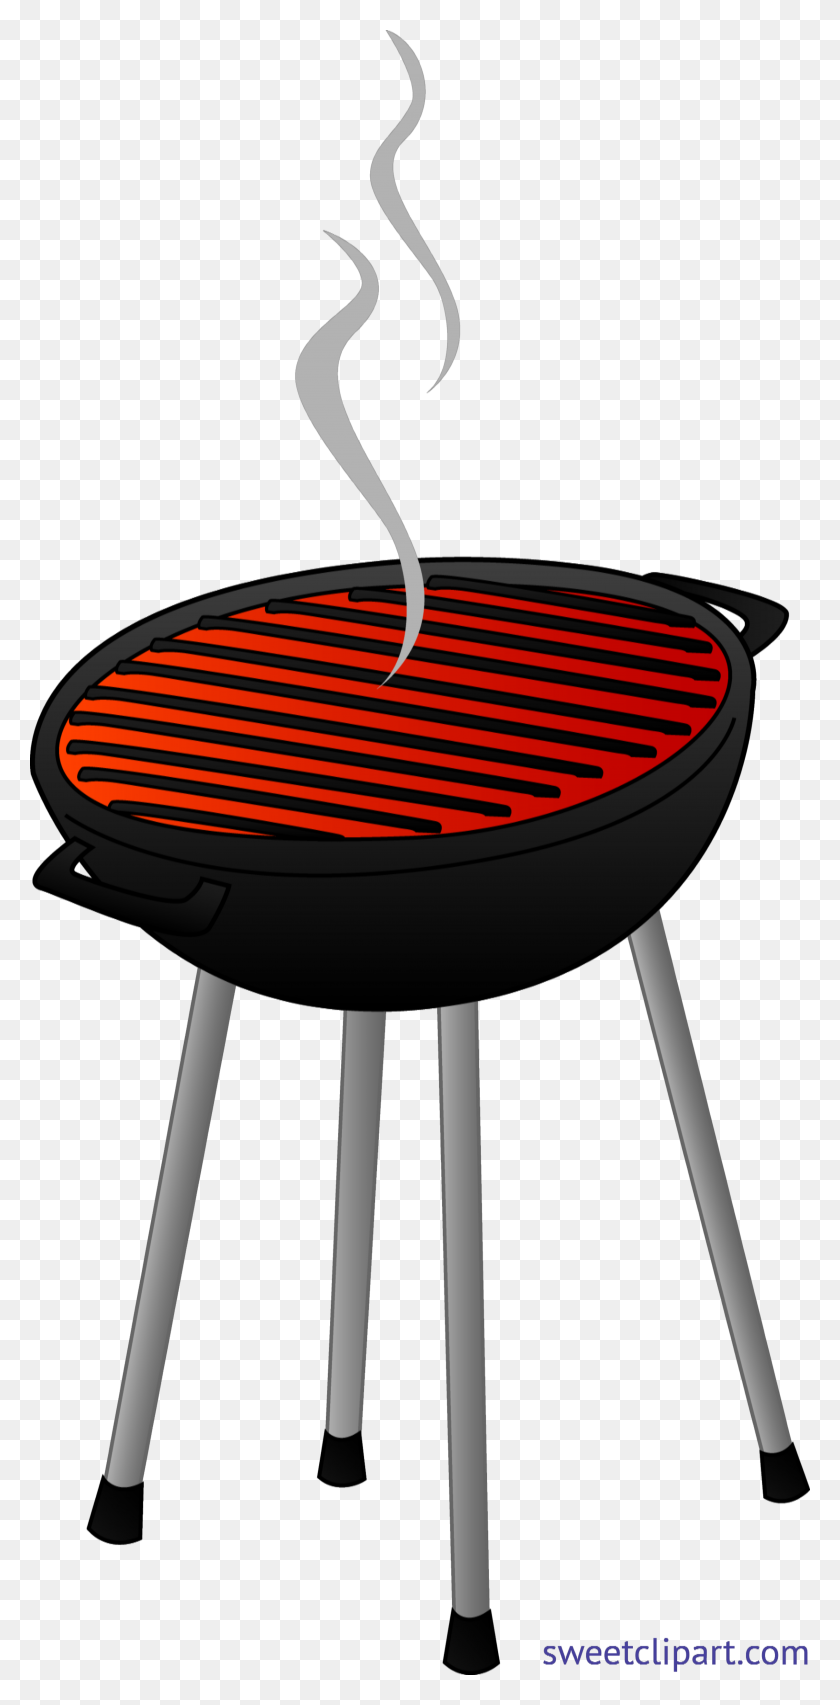 4235x8932 Barbecue Grill Clip Art - Clipart Barbecue